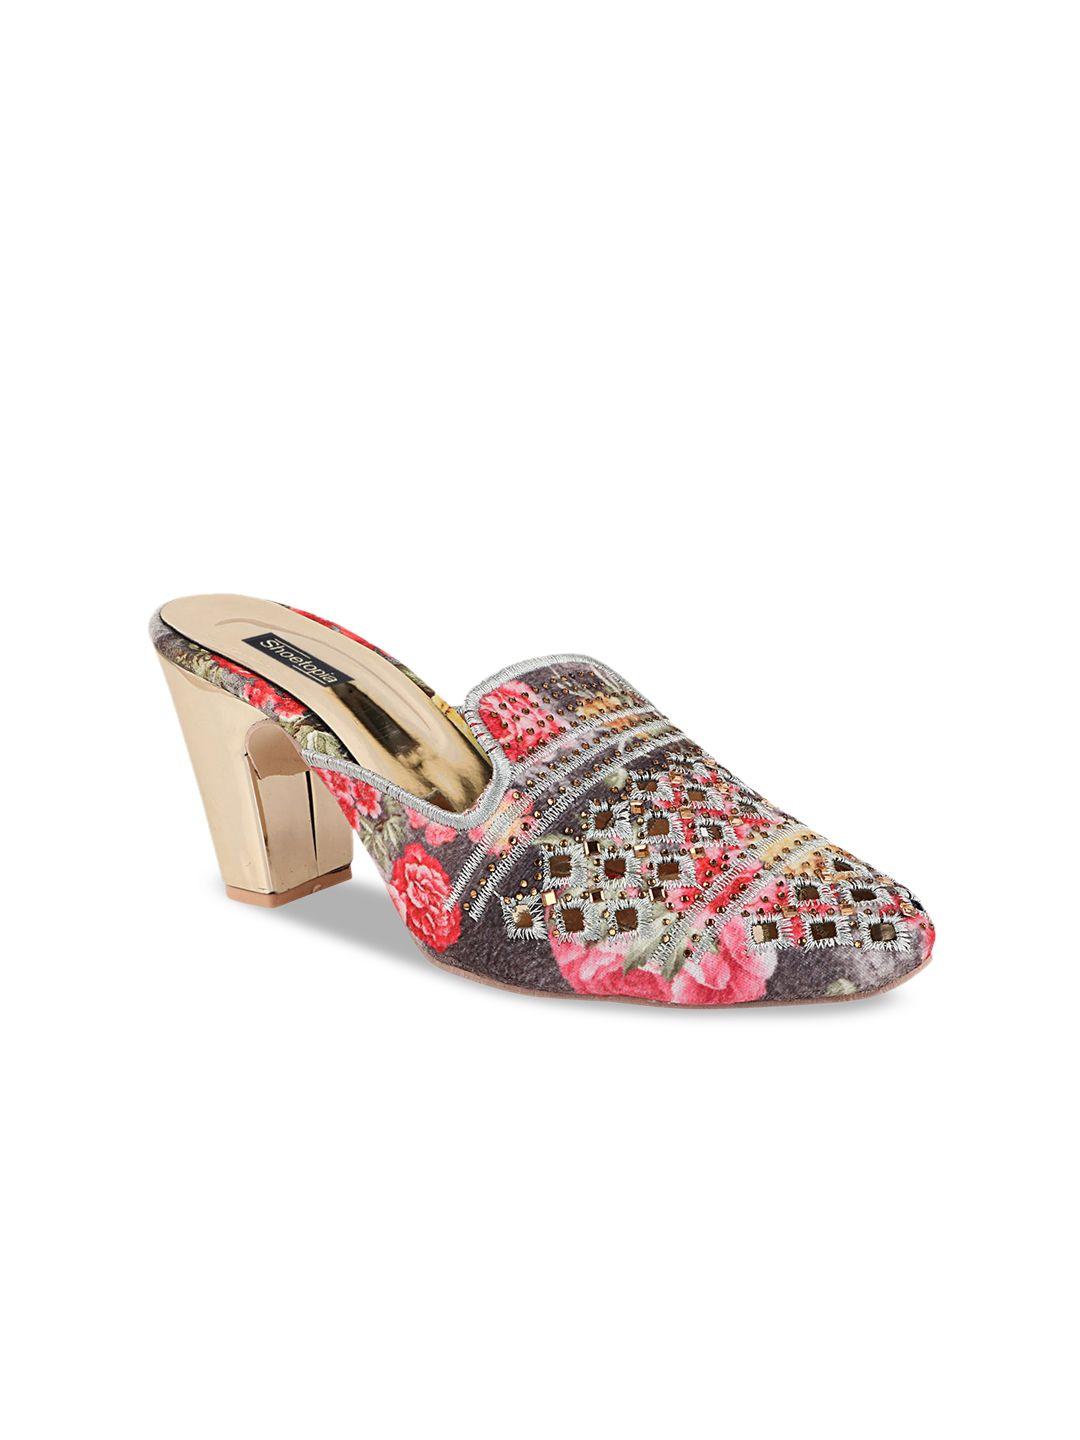 shoetopia girls ethnic embellished block heels mules